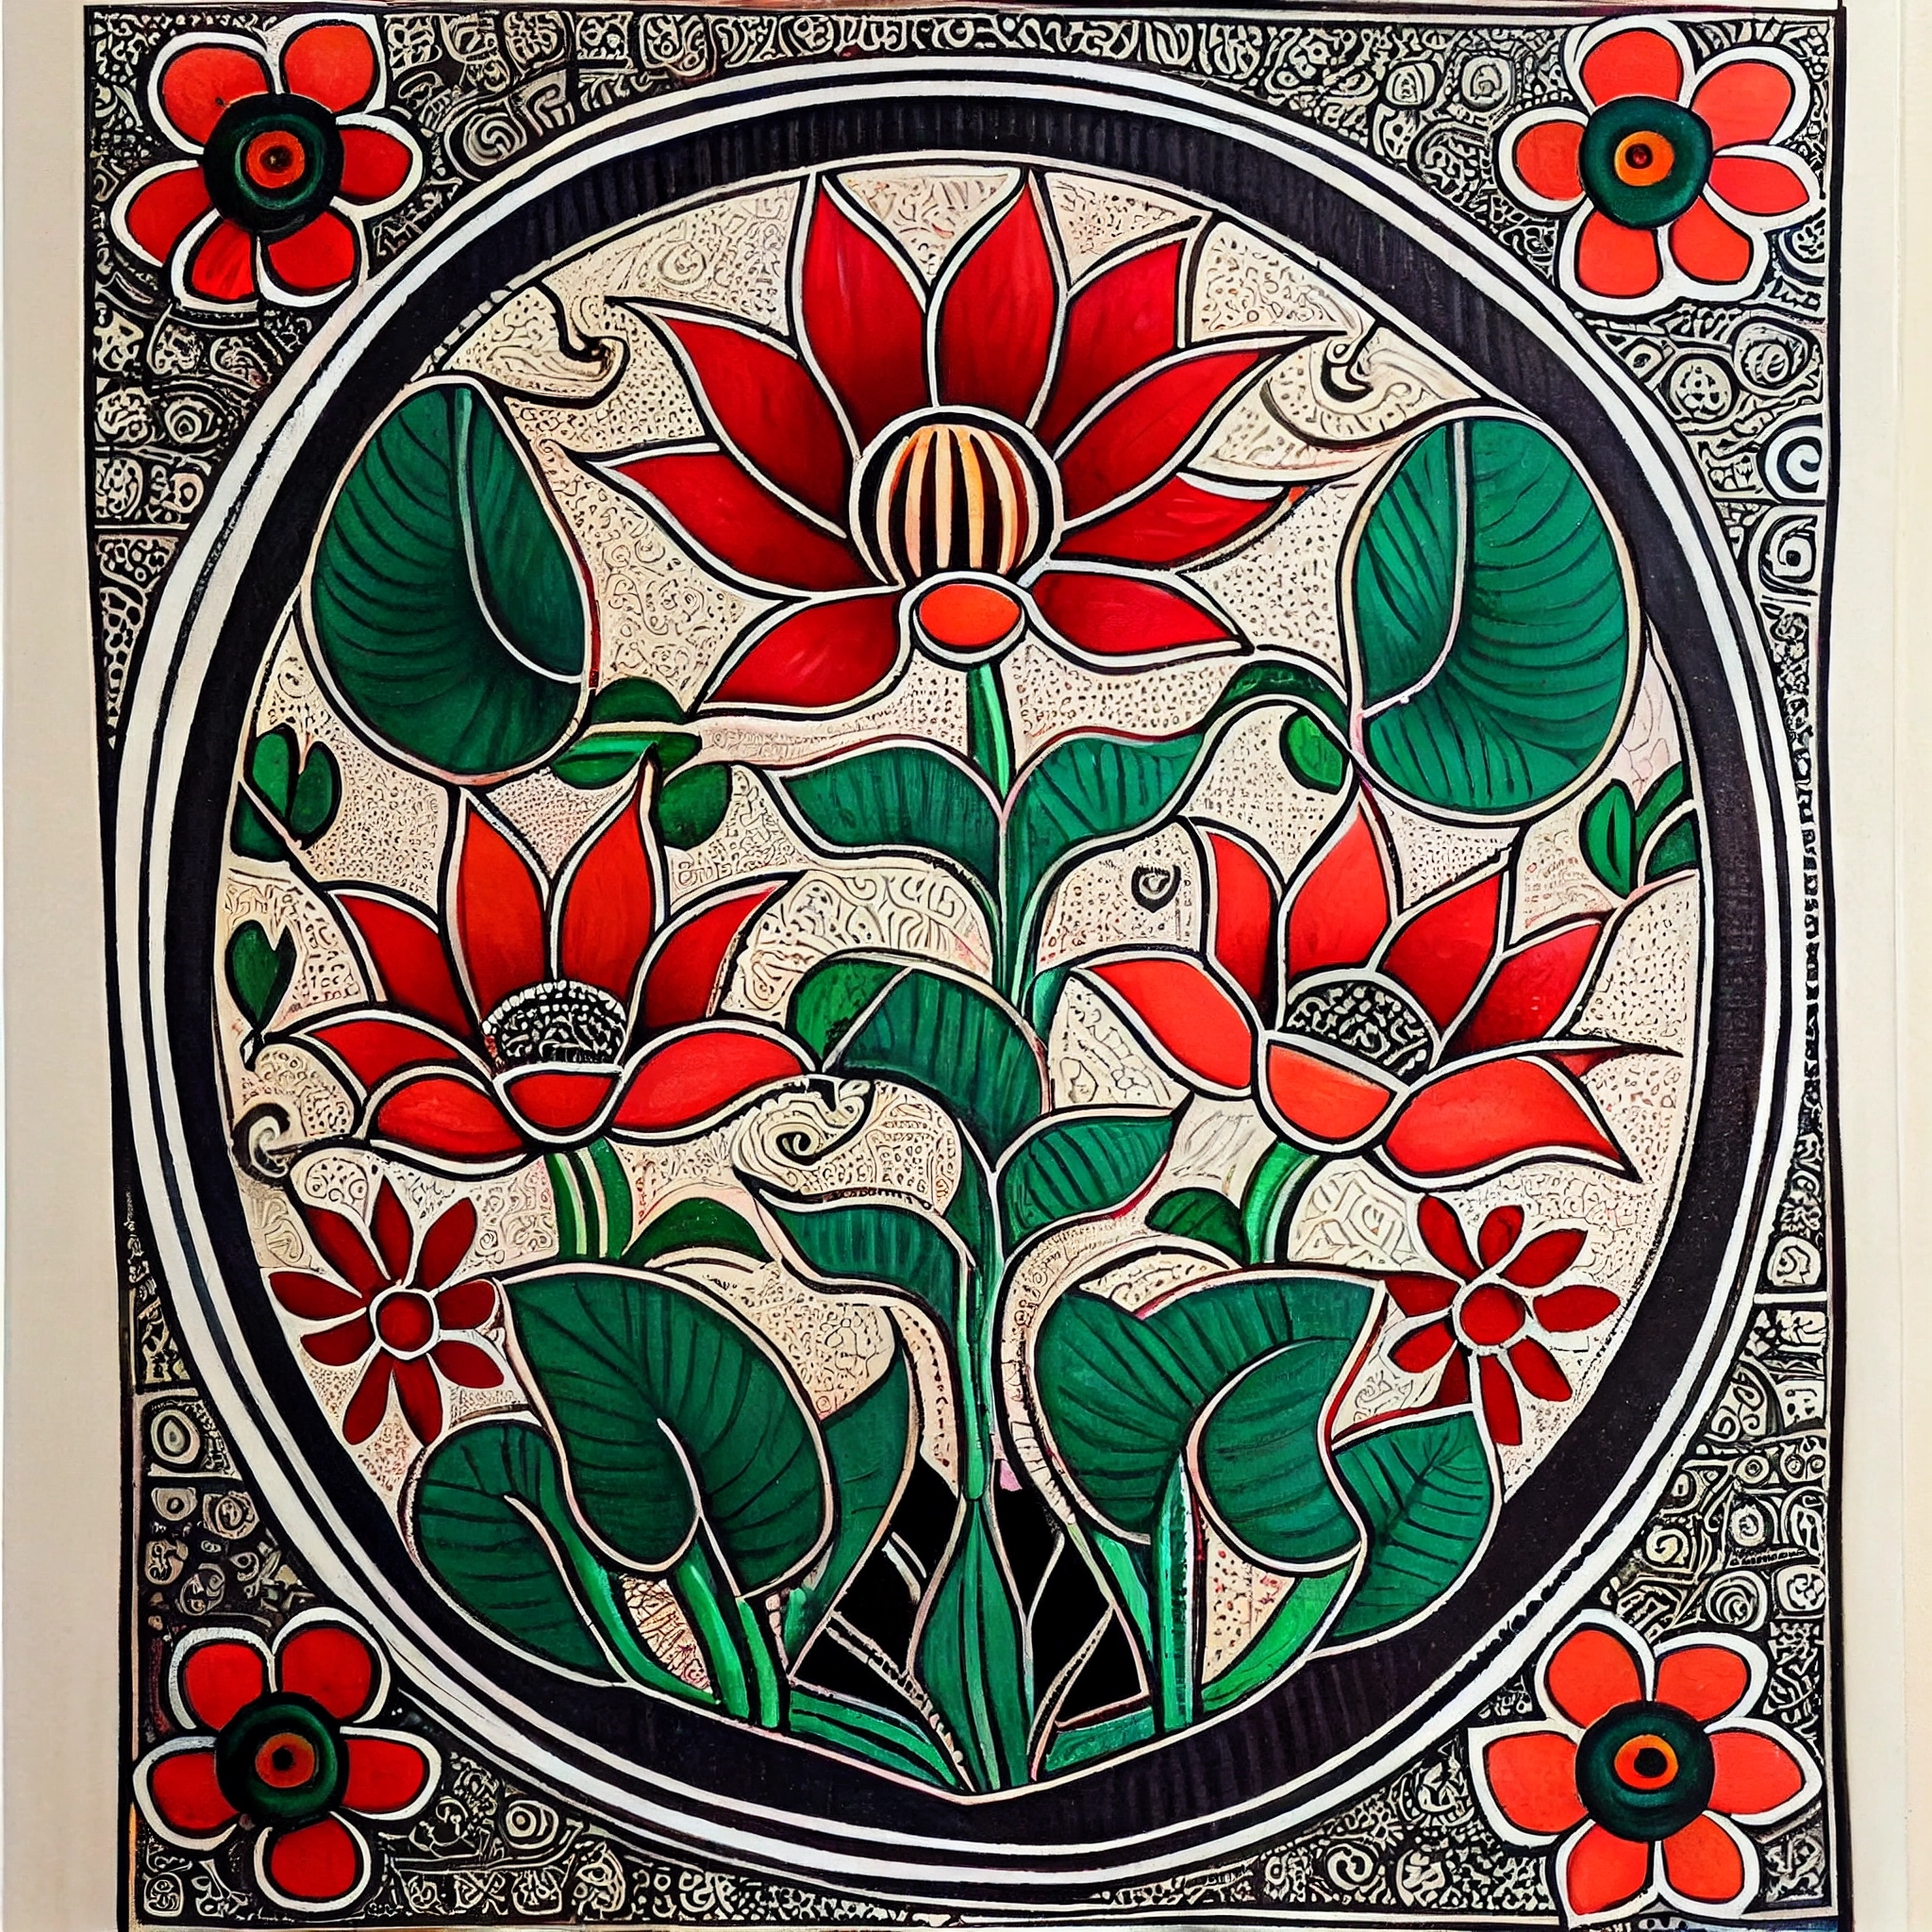 Lotus Blooms: A Stunning Madhubani Art Print of the Majestic Lotus